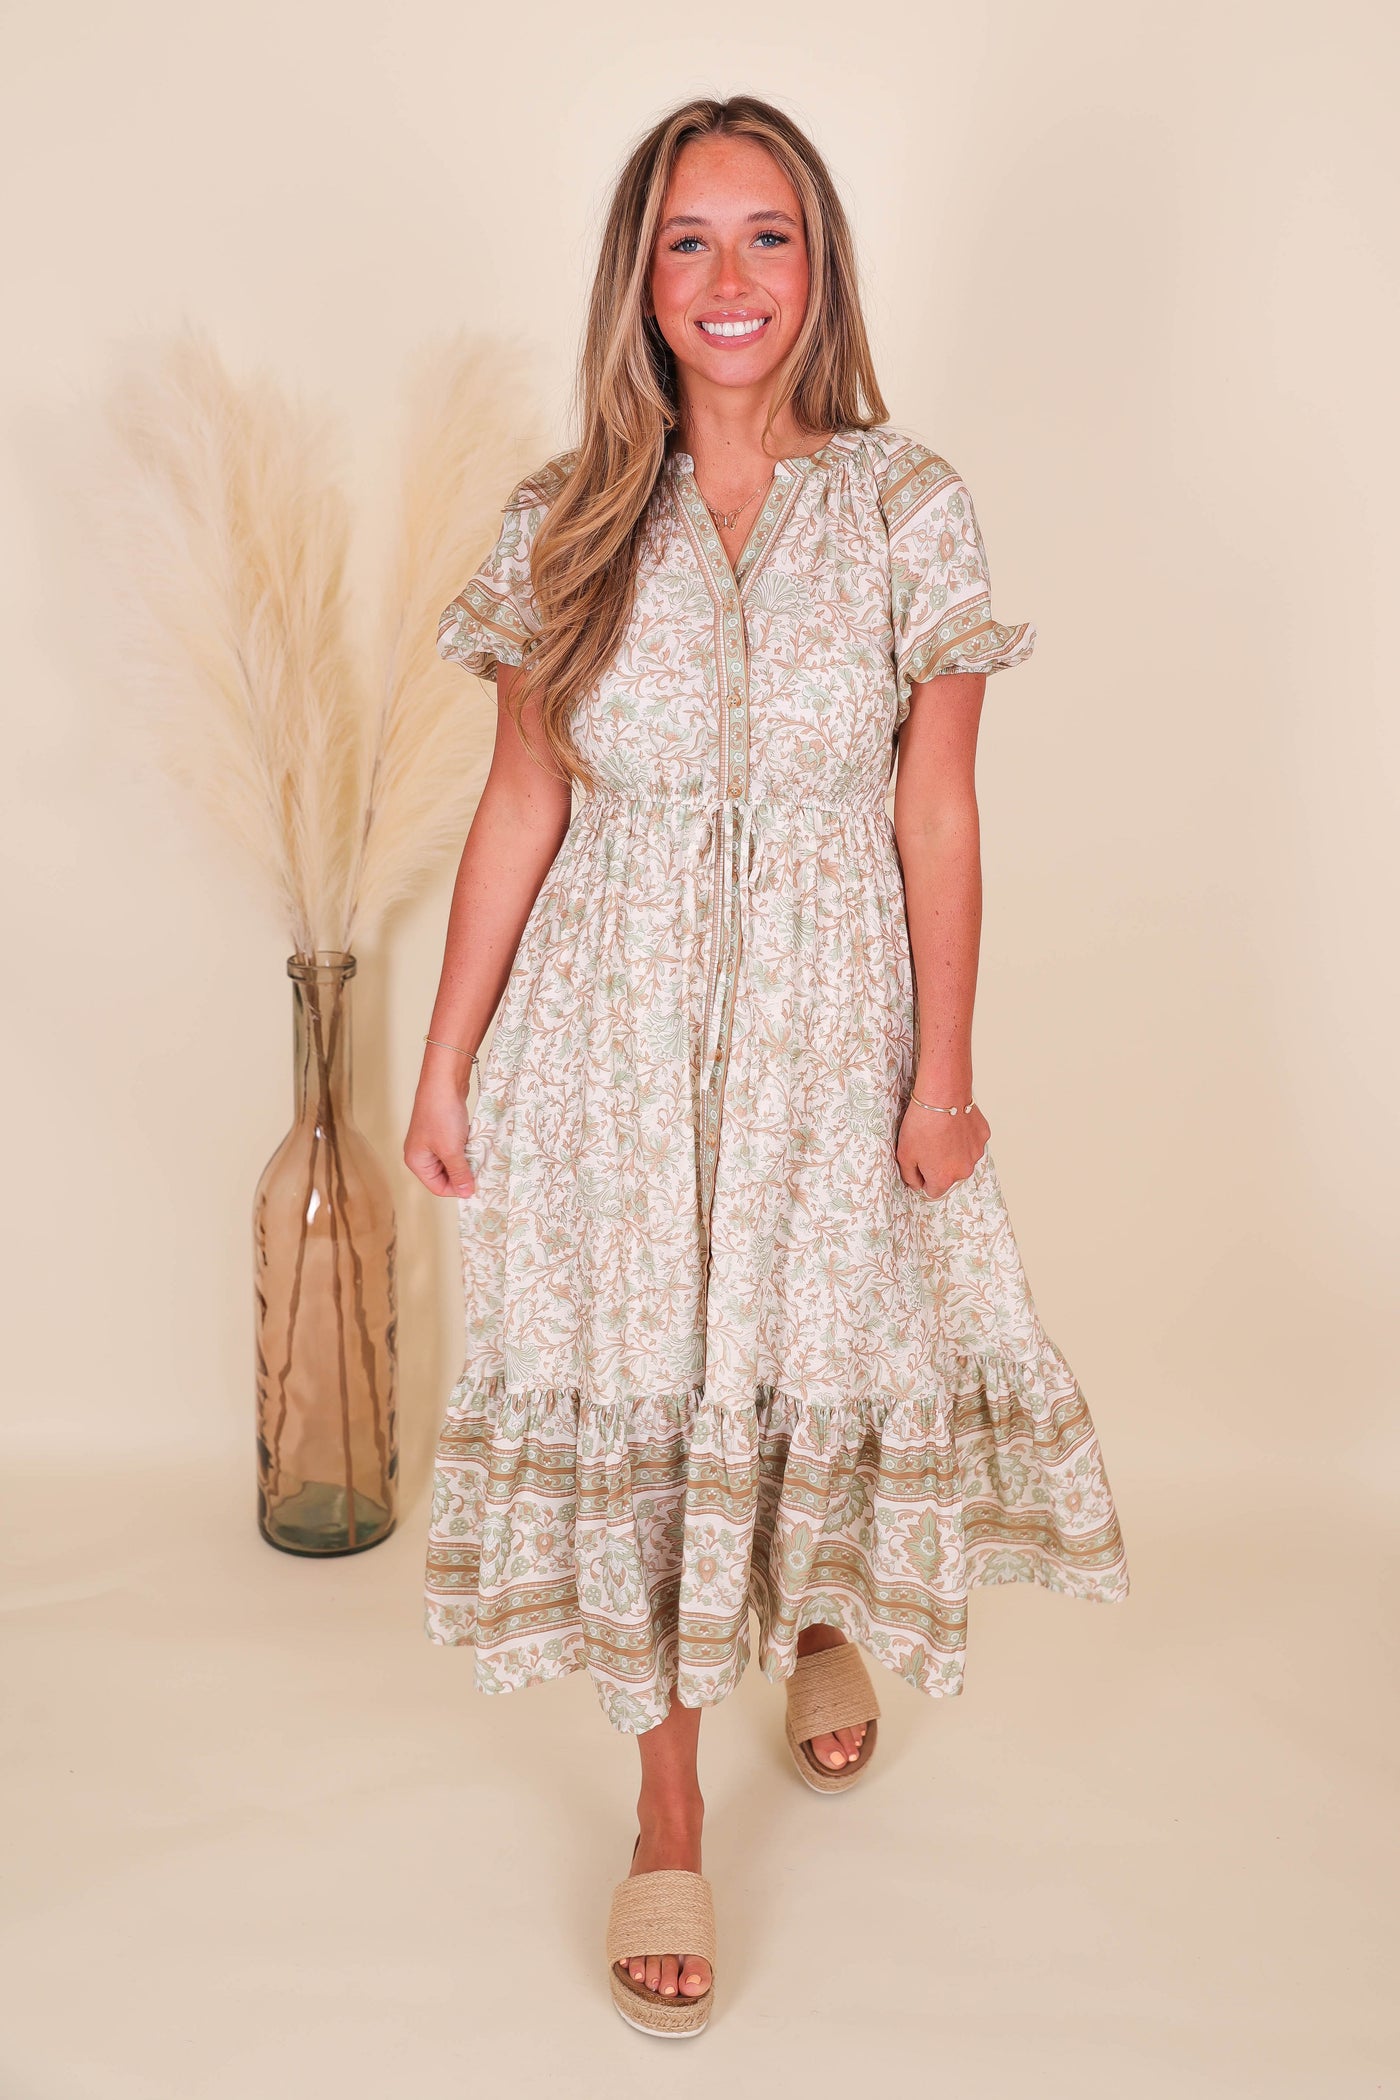 Pretty Midi Dress- Women's Conservative Midi Dress- Paisley Print Dress- Blu Pepper Midi Dress